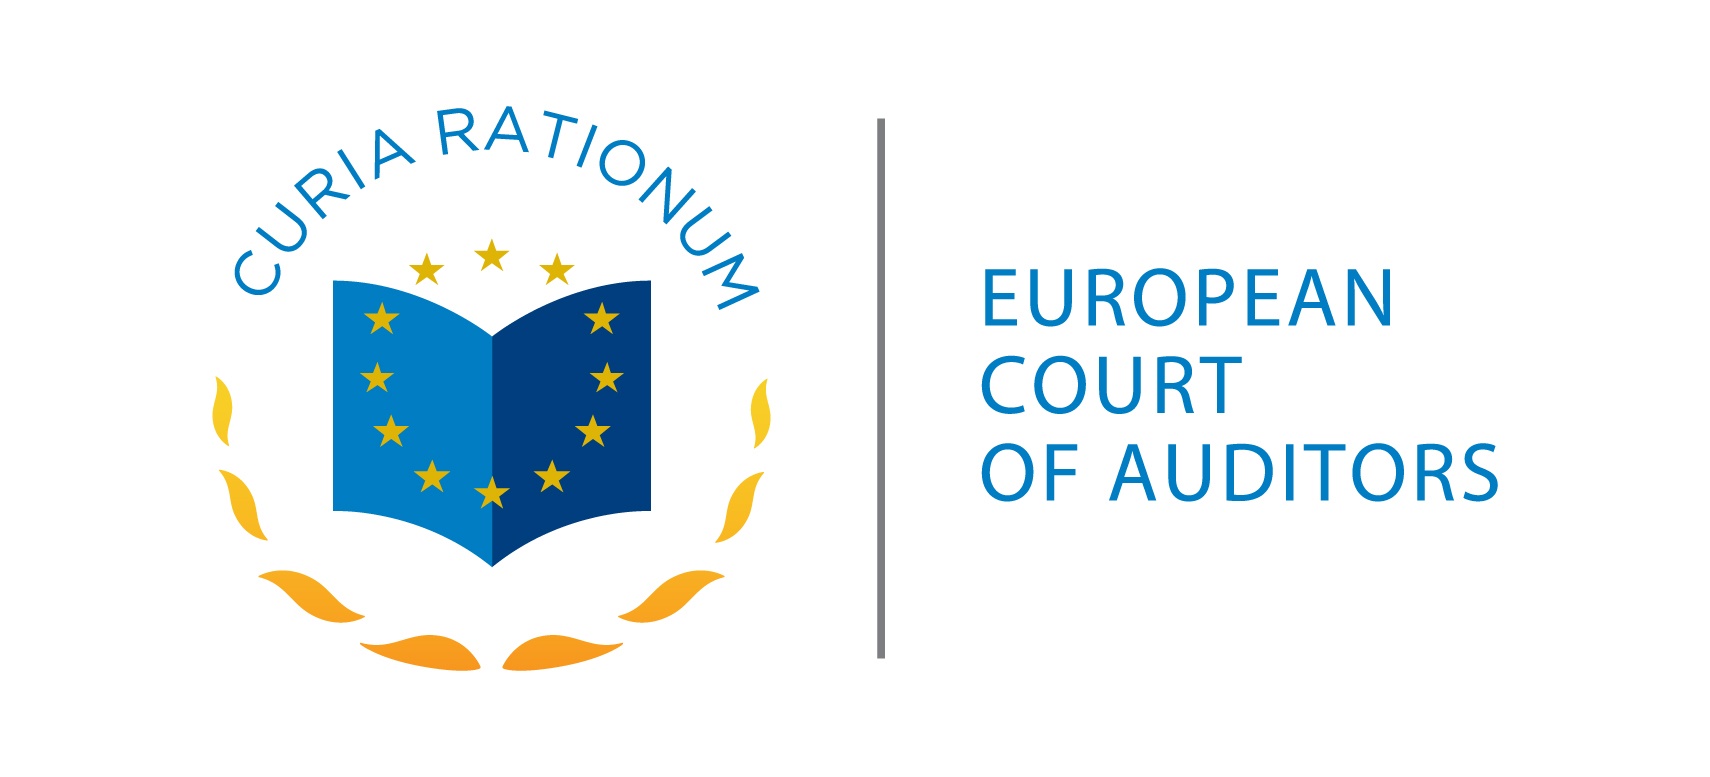 Euroopan unionin tuomioistuin